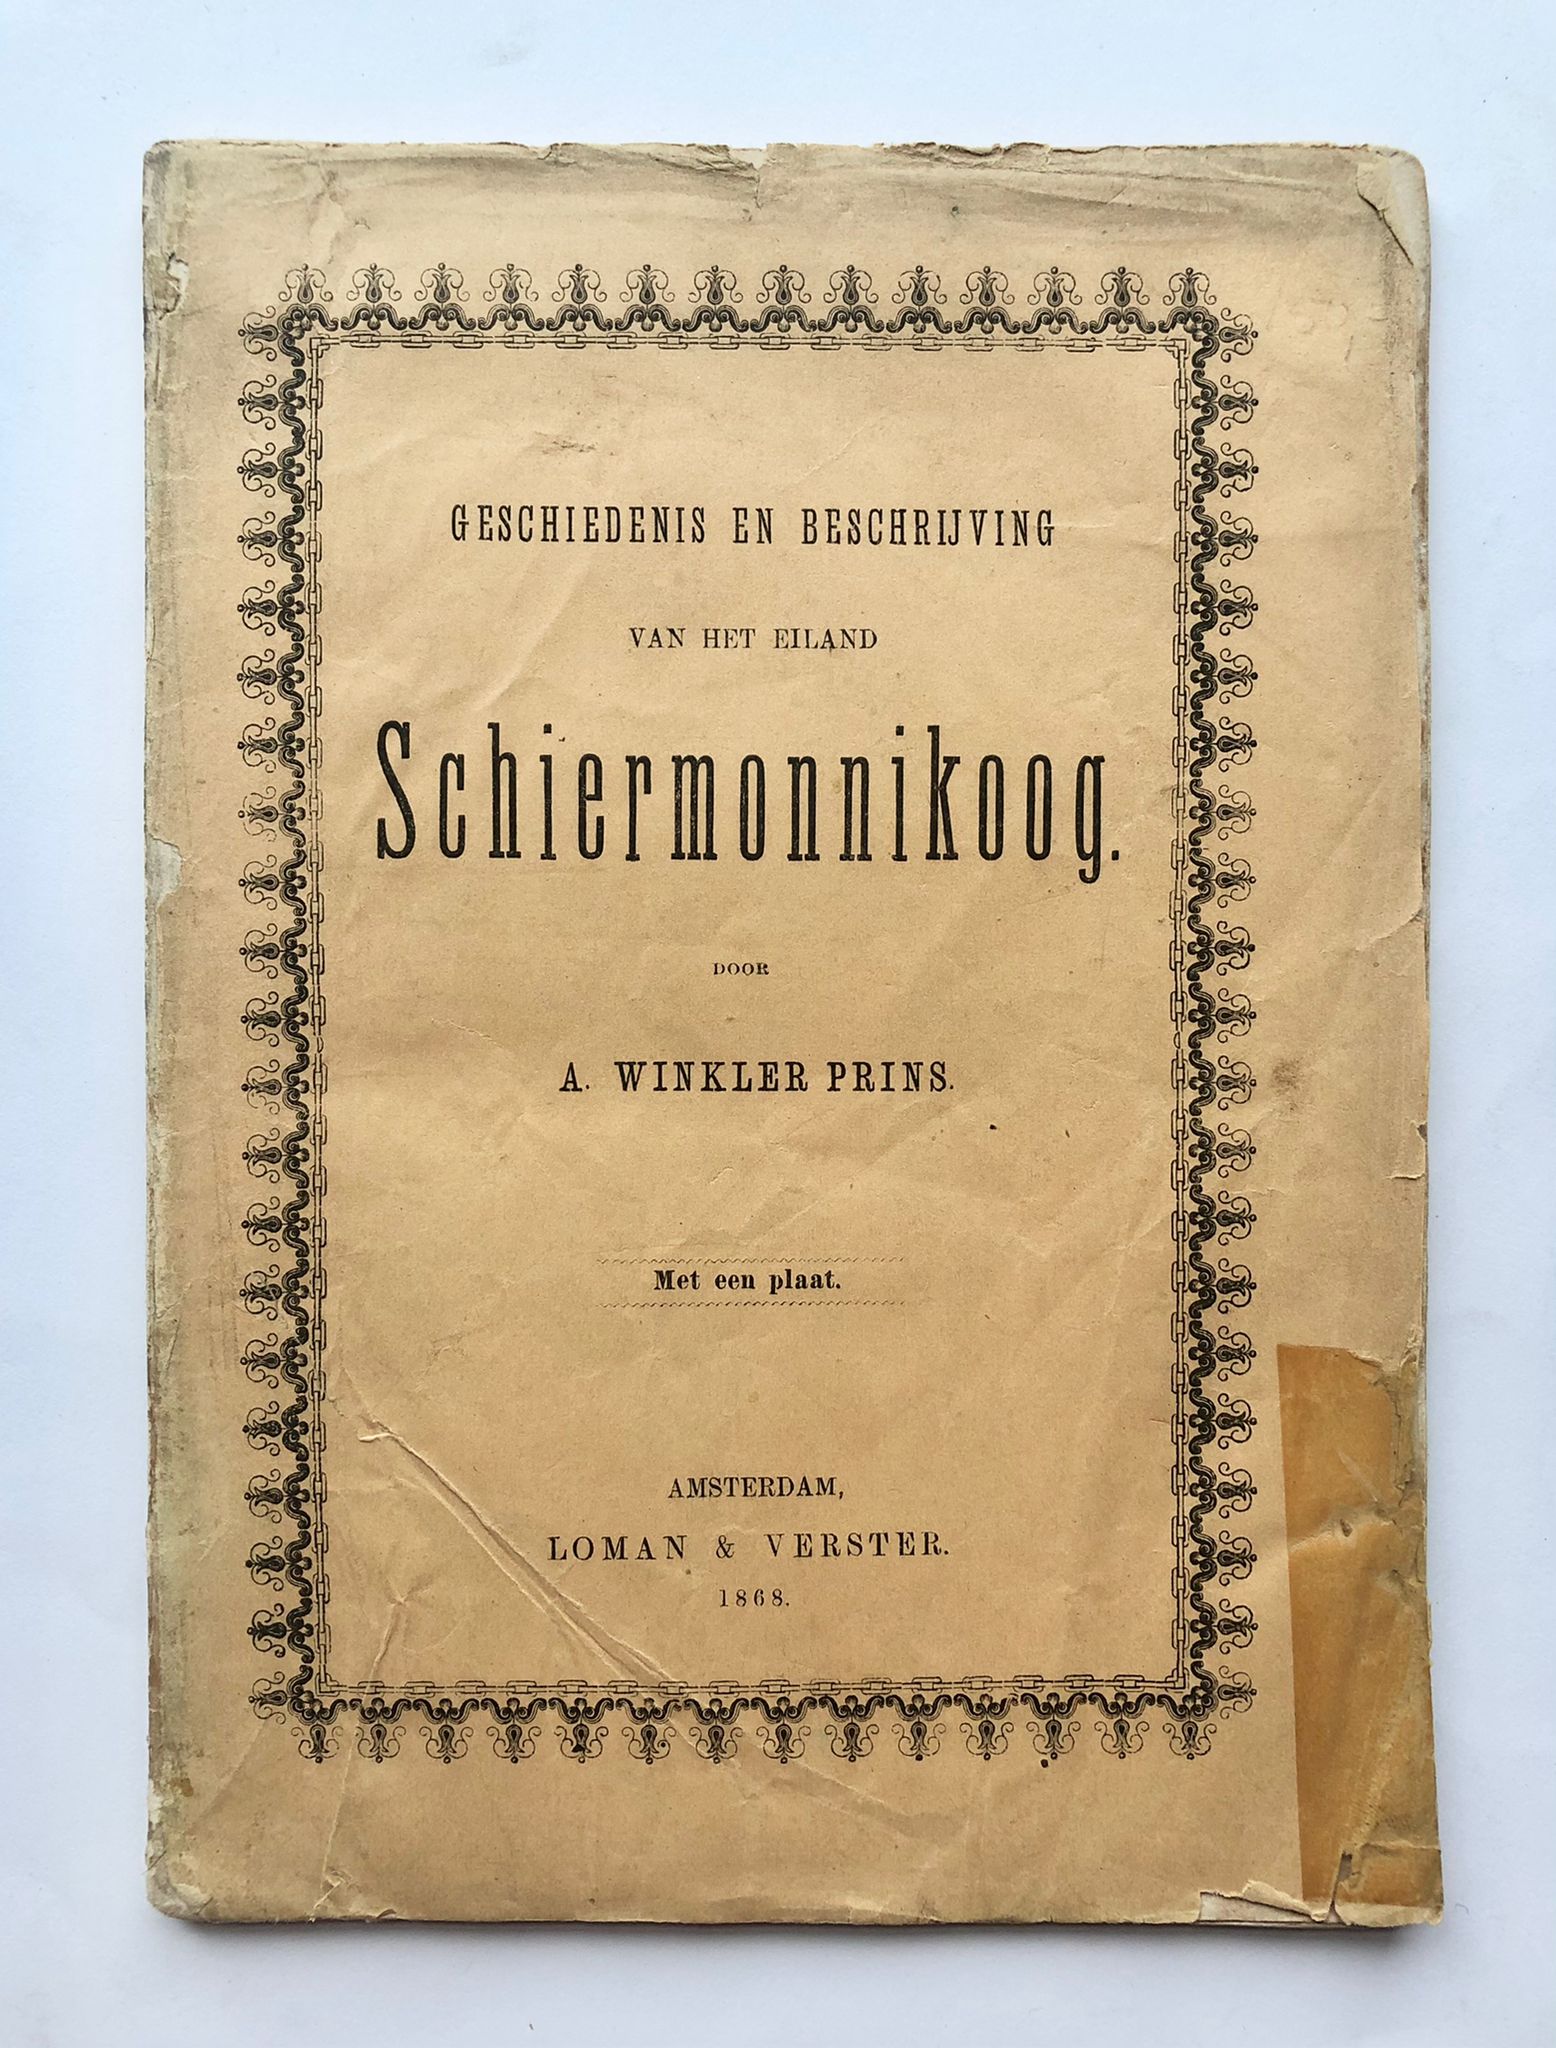 [First edition, Schiermonnikoog, 1868] Geschiedenis en beschrijving van het eiland Schiermonnikoog, Met een plaat, Loman & Verster, Amsterdam, 1868, 109 pp.